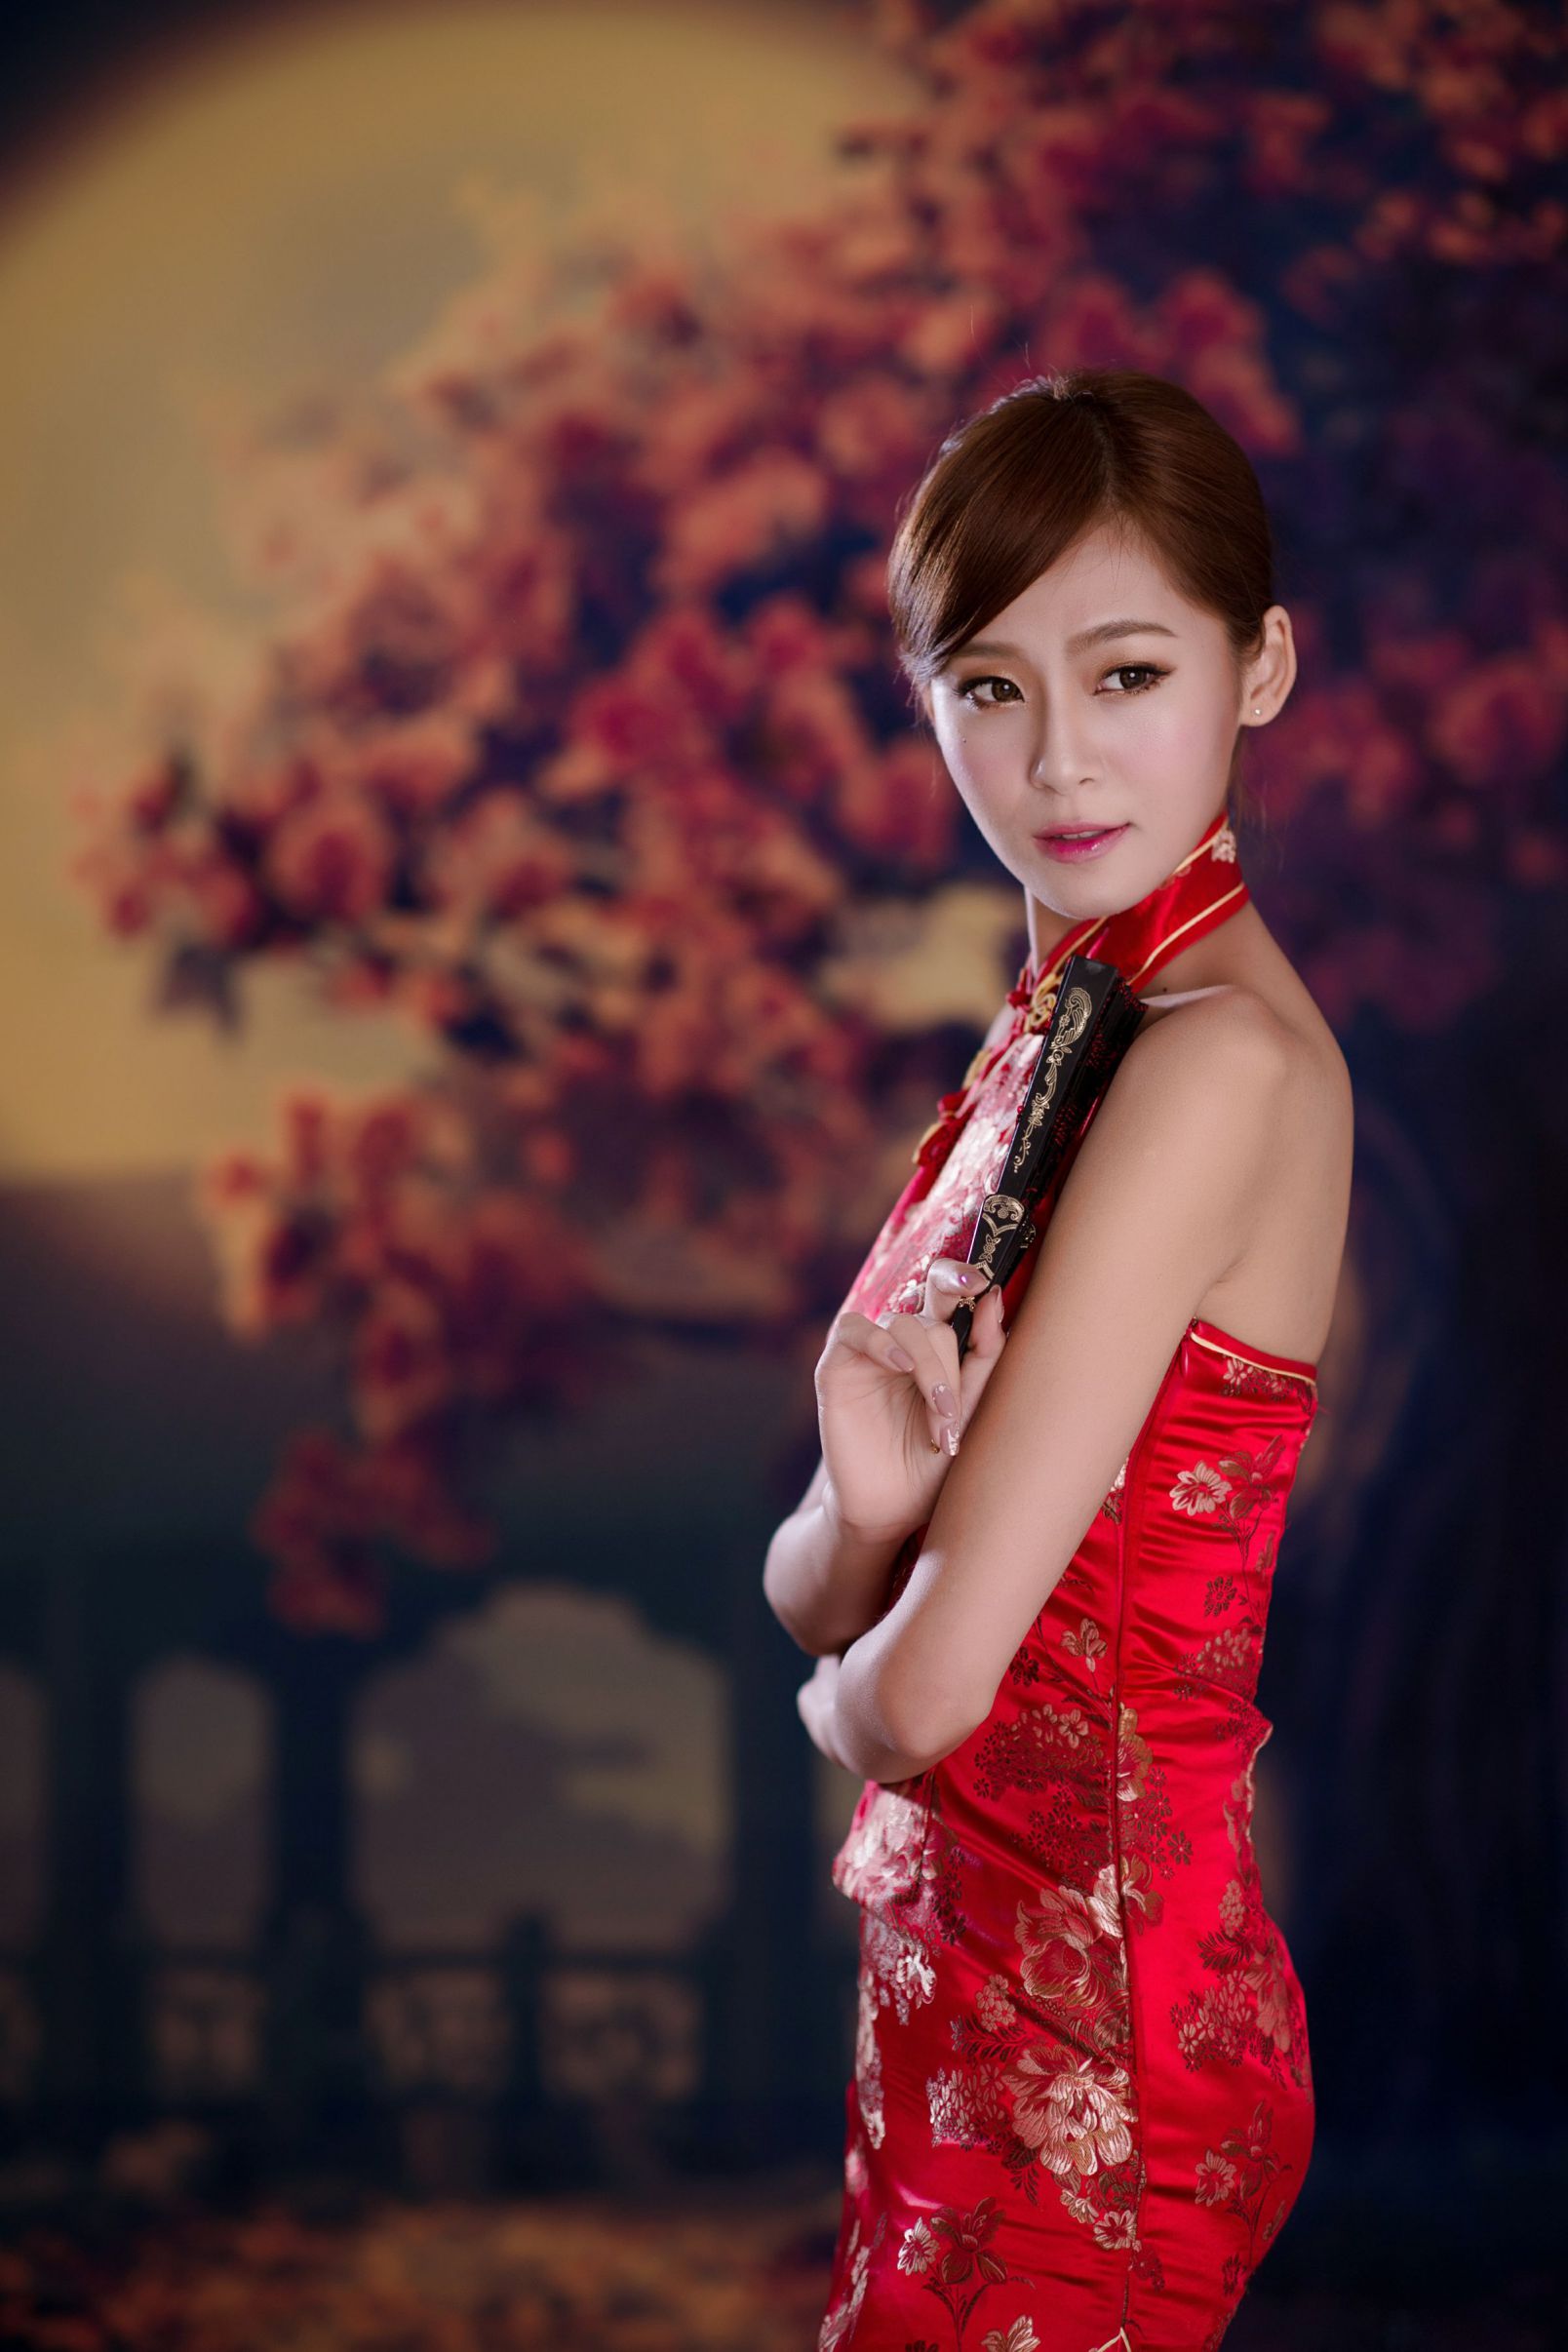 [BEAUTYLEG番外篇] Winnie小雪 - 红色旗袍性感迷人写真